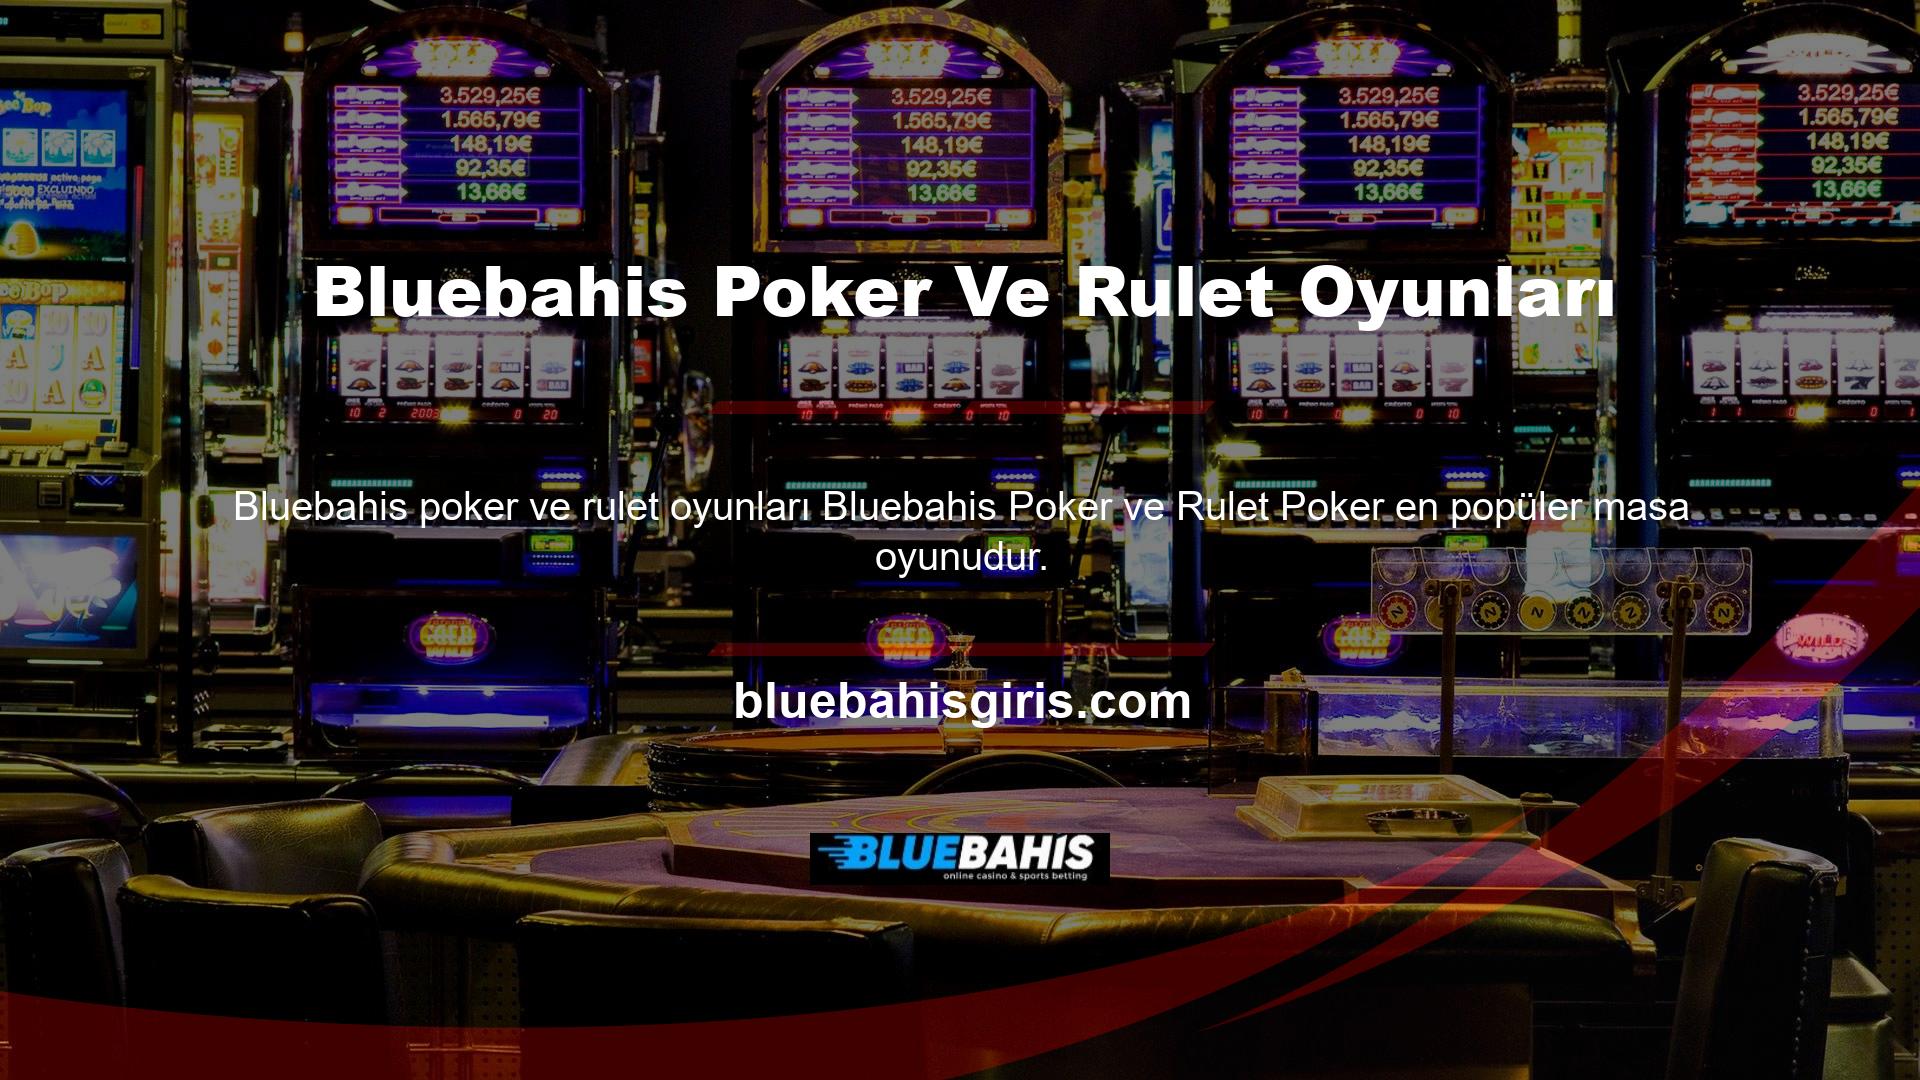 Bluebahis Solitaire'de canlı casino pokerini kullanmak için "Canlı Masa Oyunları" sekmesine tıklamanız gerekmektedir